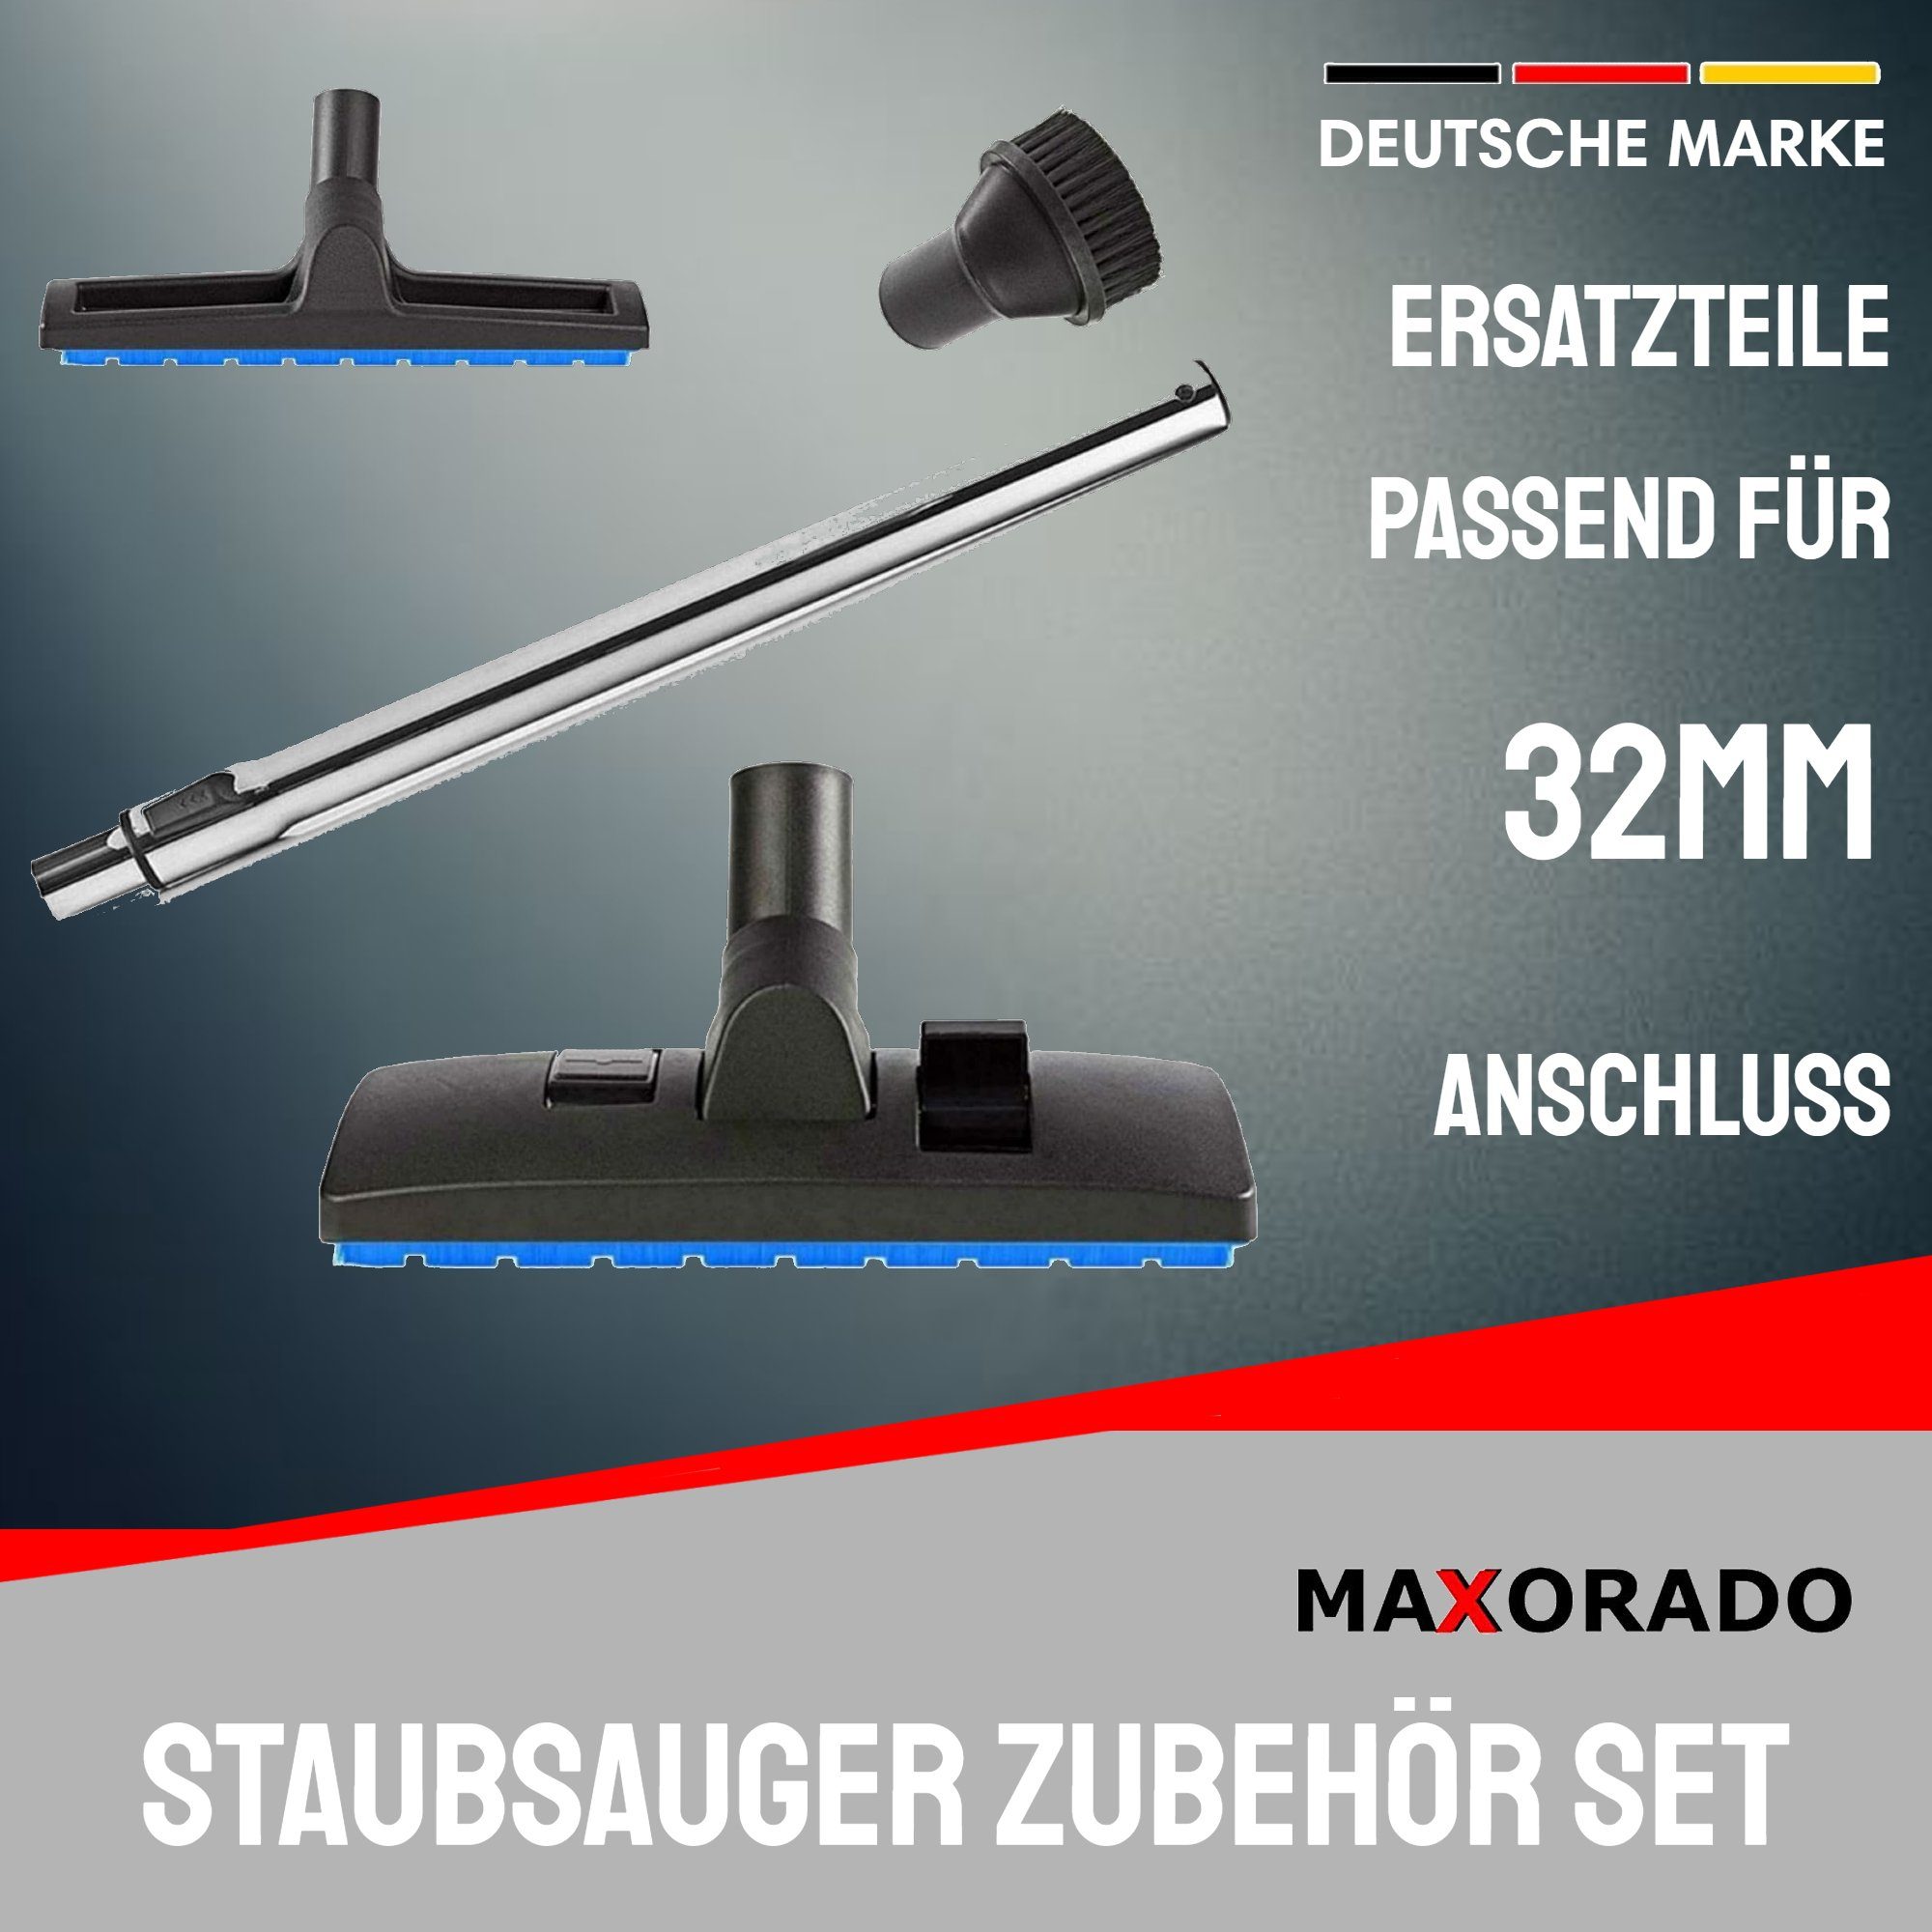 Maxorado Bodendüse Düsen Rohr für Tubby Haier Welpe + Midea Staubsuager 32mm DN32 norvac